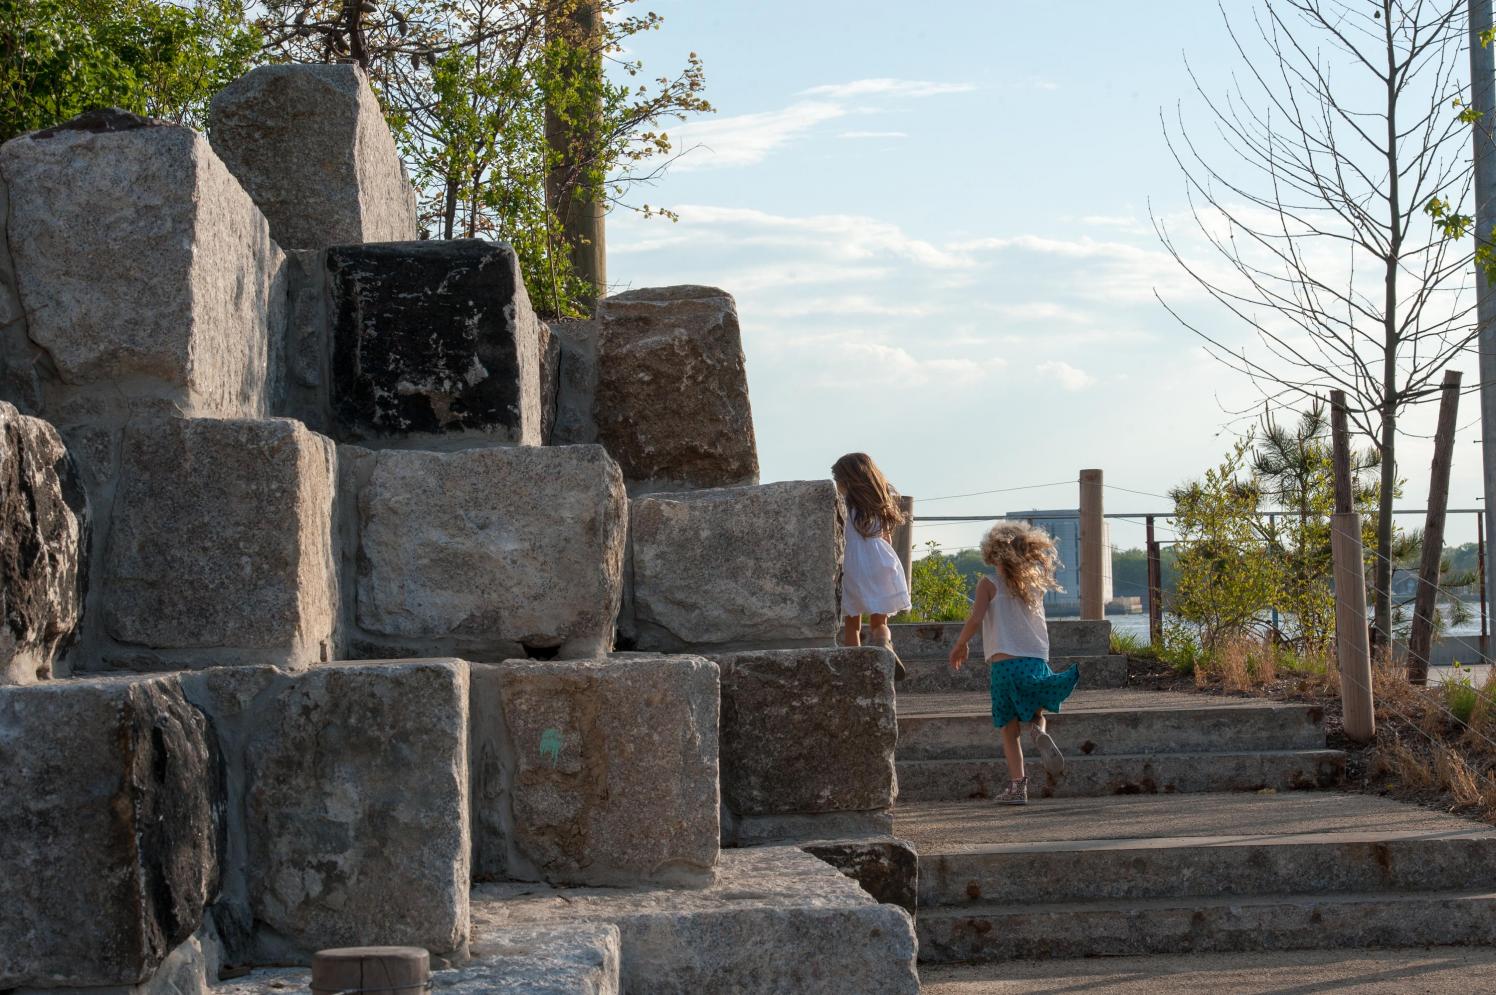 Two small children running up steps next to granite blocks.